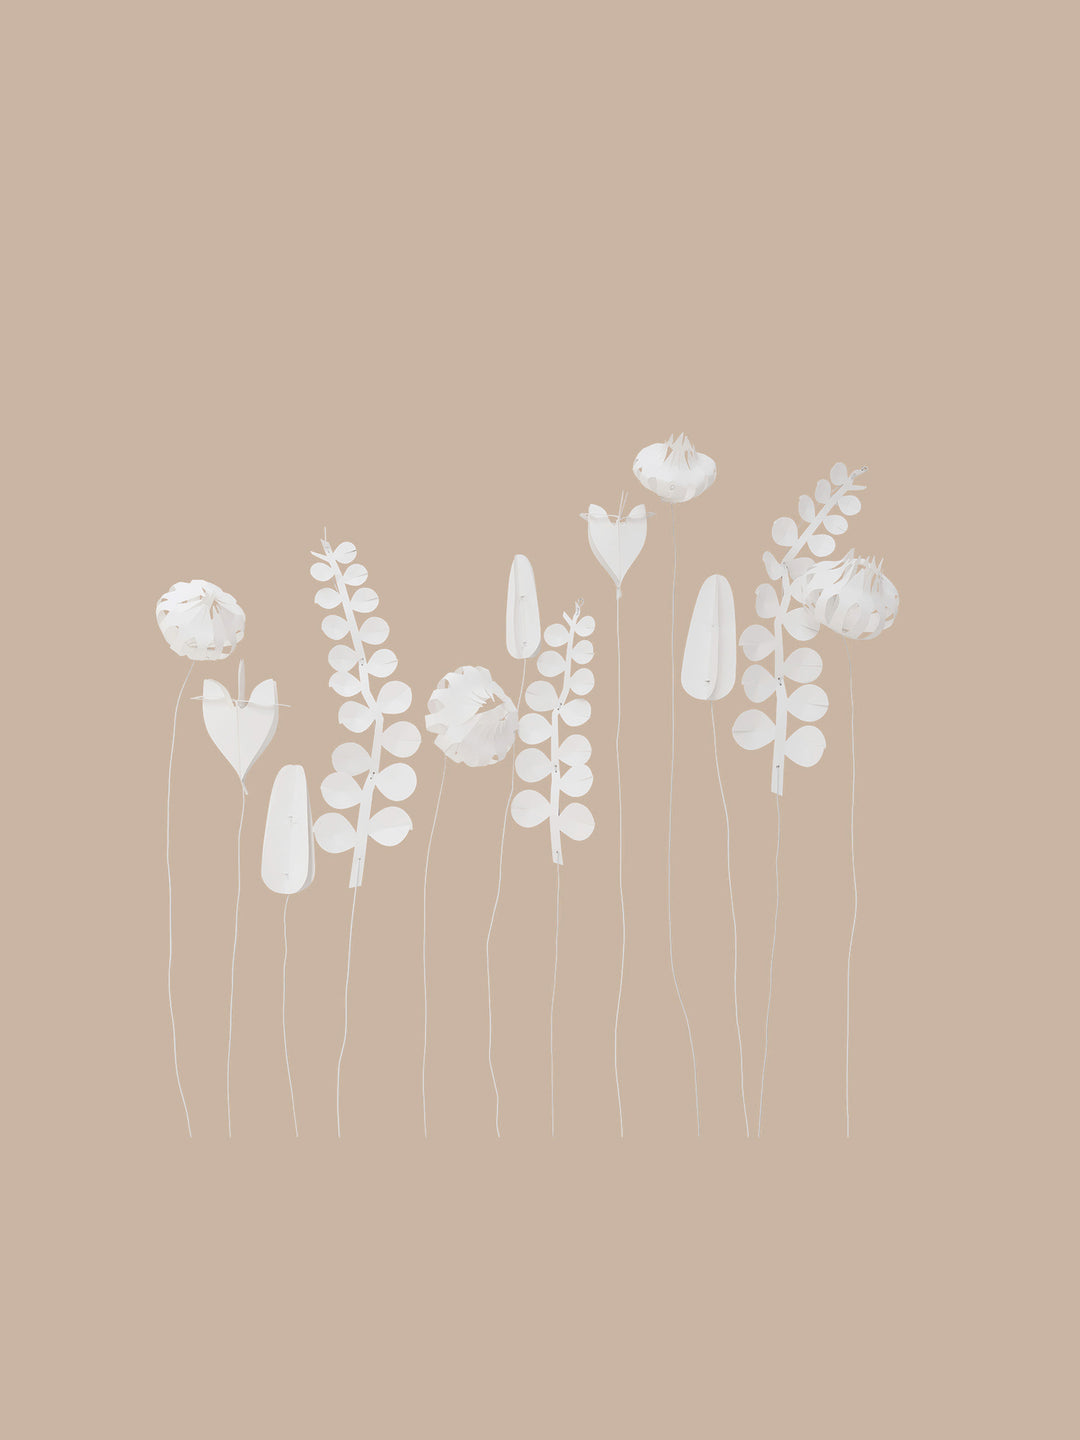 Field Flowers by Jurianne Matter - large set